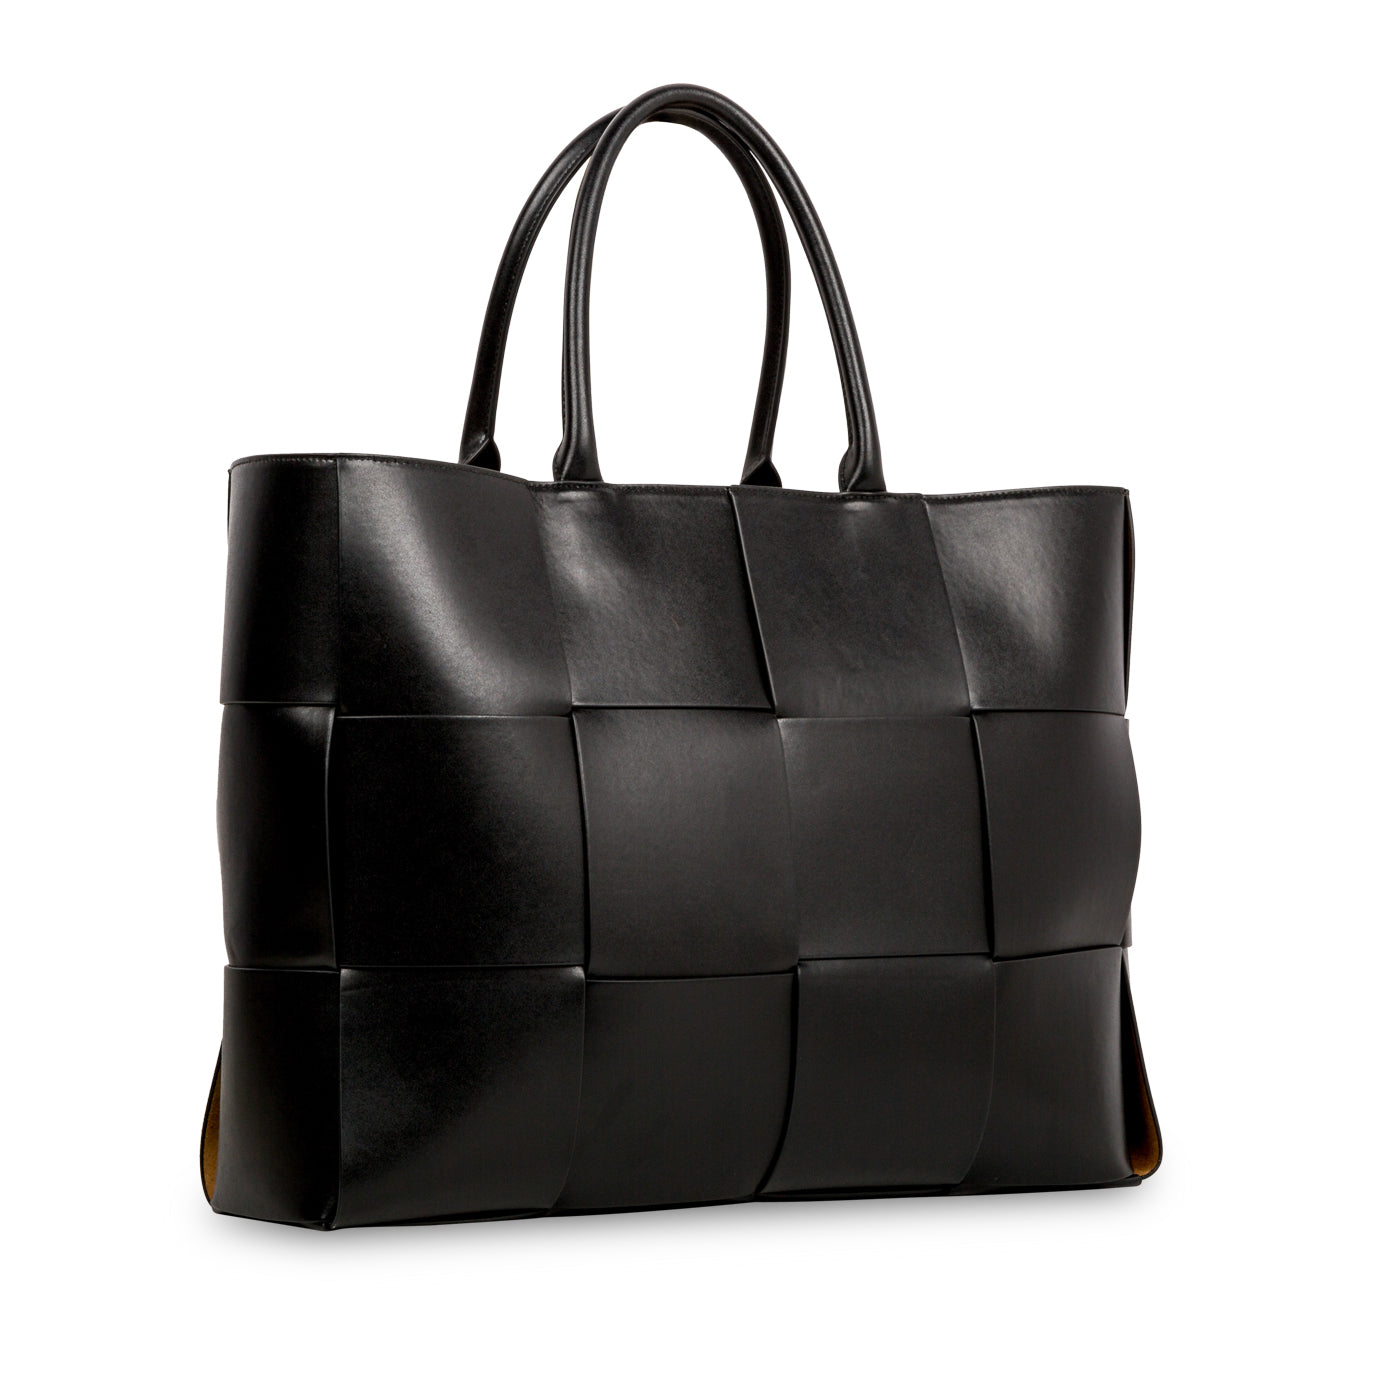 Bottega Veneta - Large Arco Tote - Black Nappa Leather - Pre-Loved ...